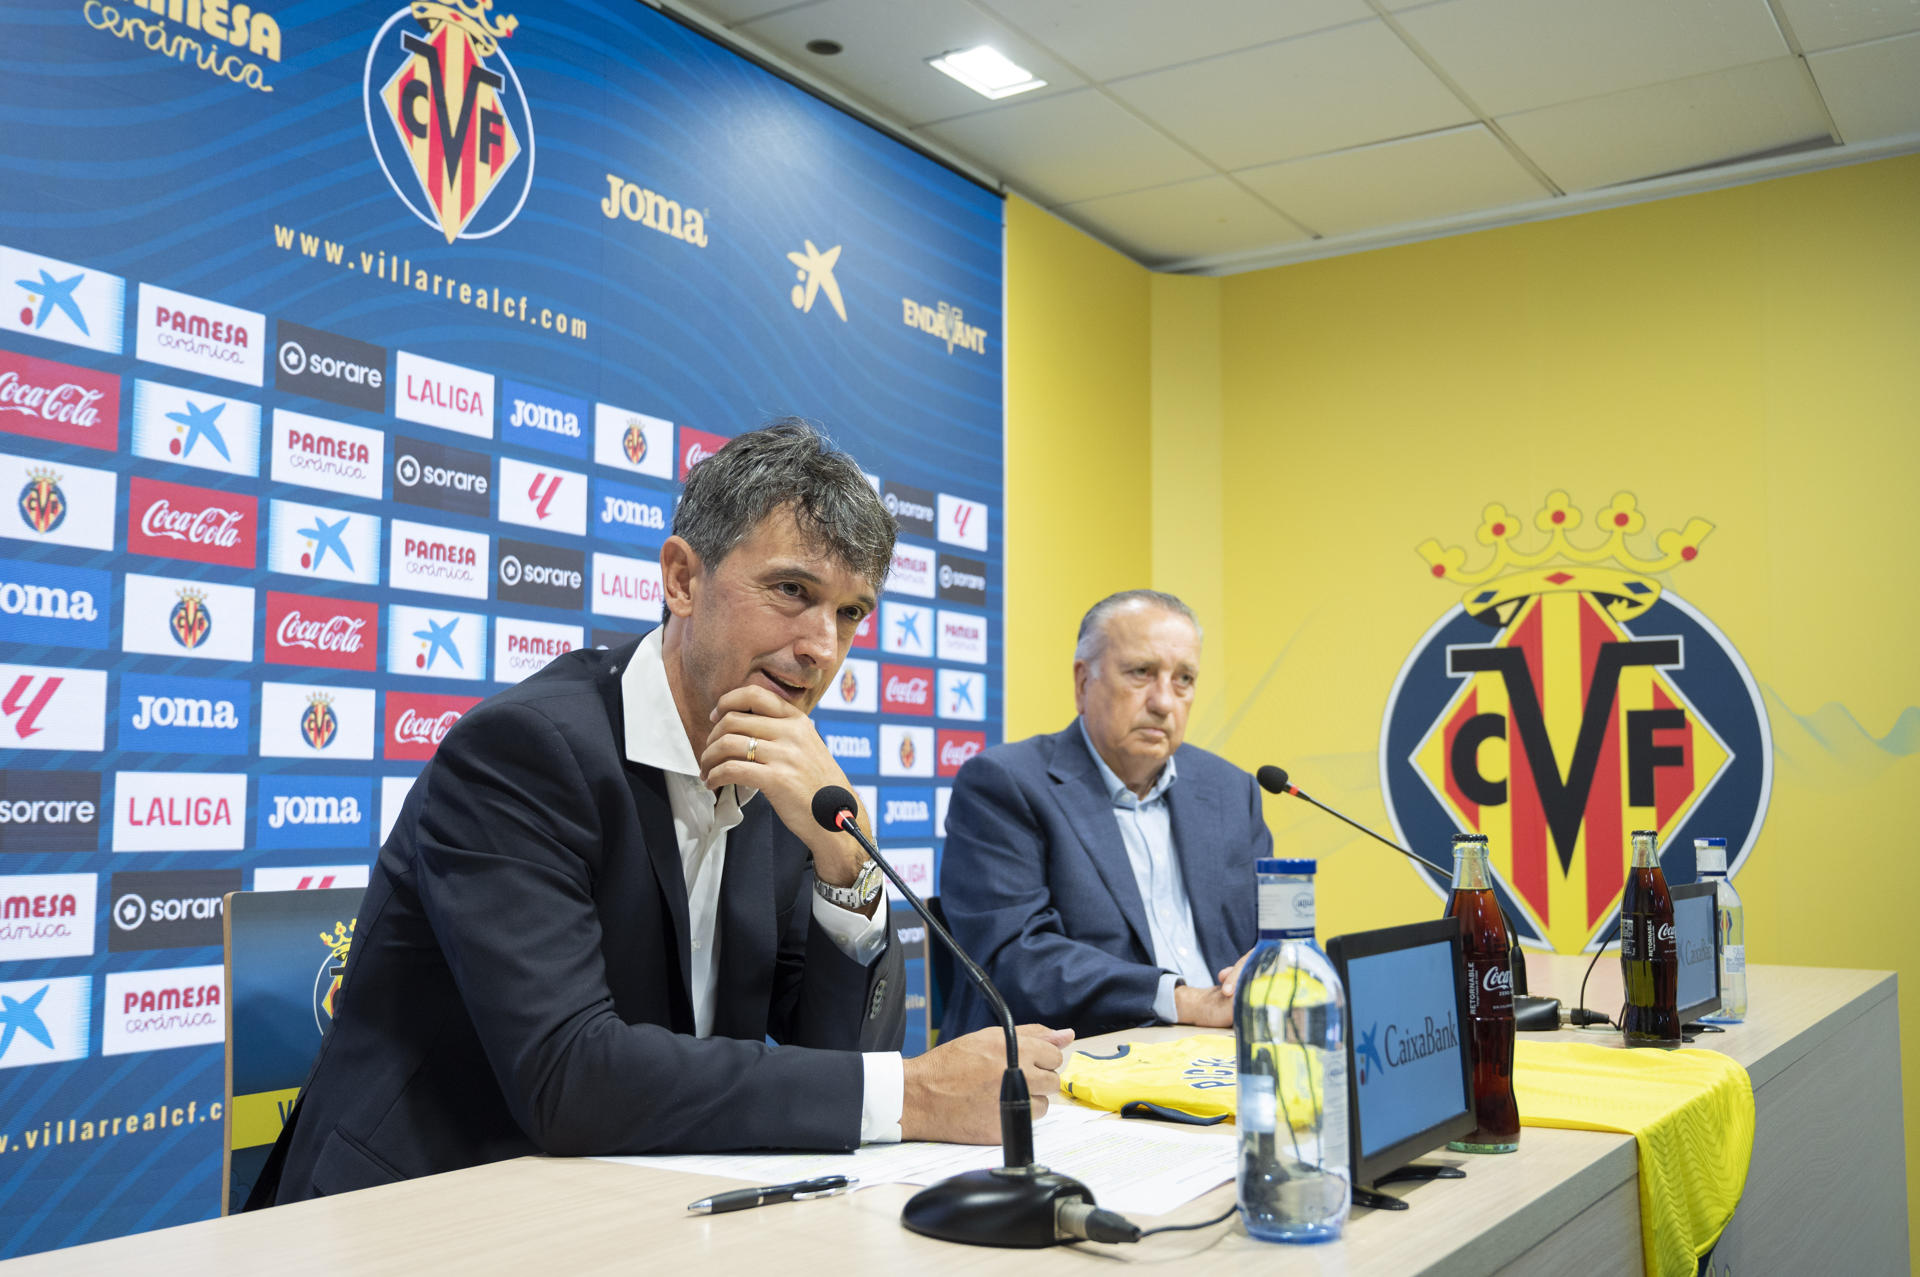 El nuevo entrenador del Villarreal, José Rojo 'Pacheta', durante su presentación hoy en la ciudad deportiva José Manuel Llaneza.EFE/ Andreu Esteban
